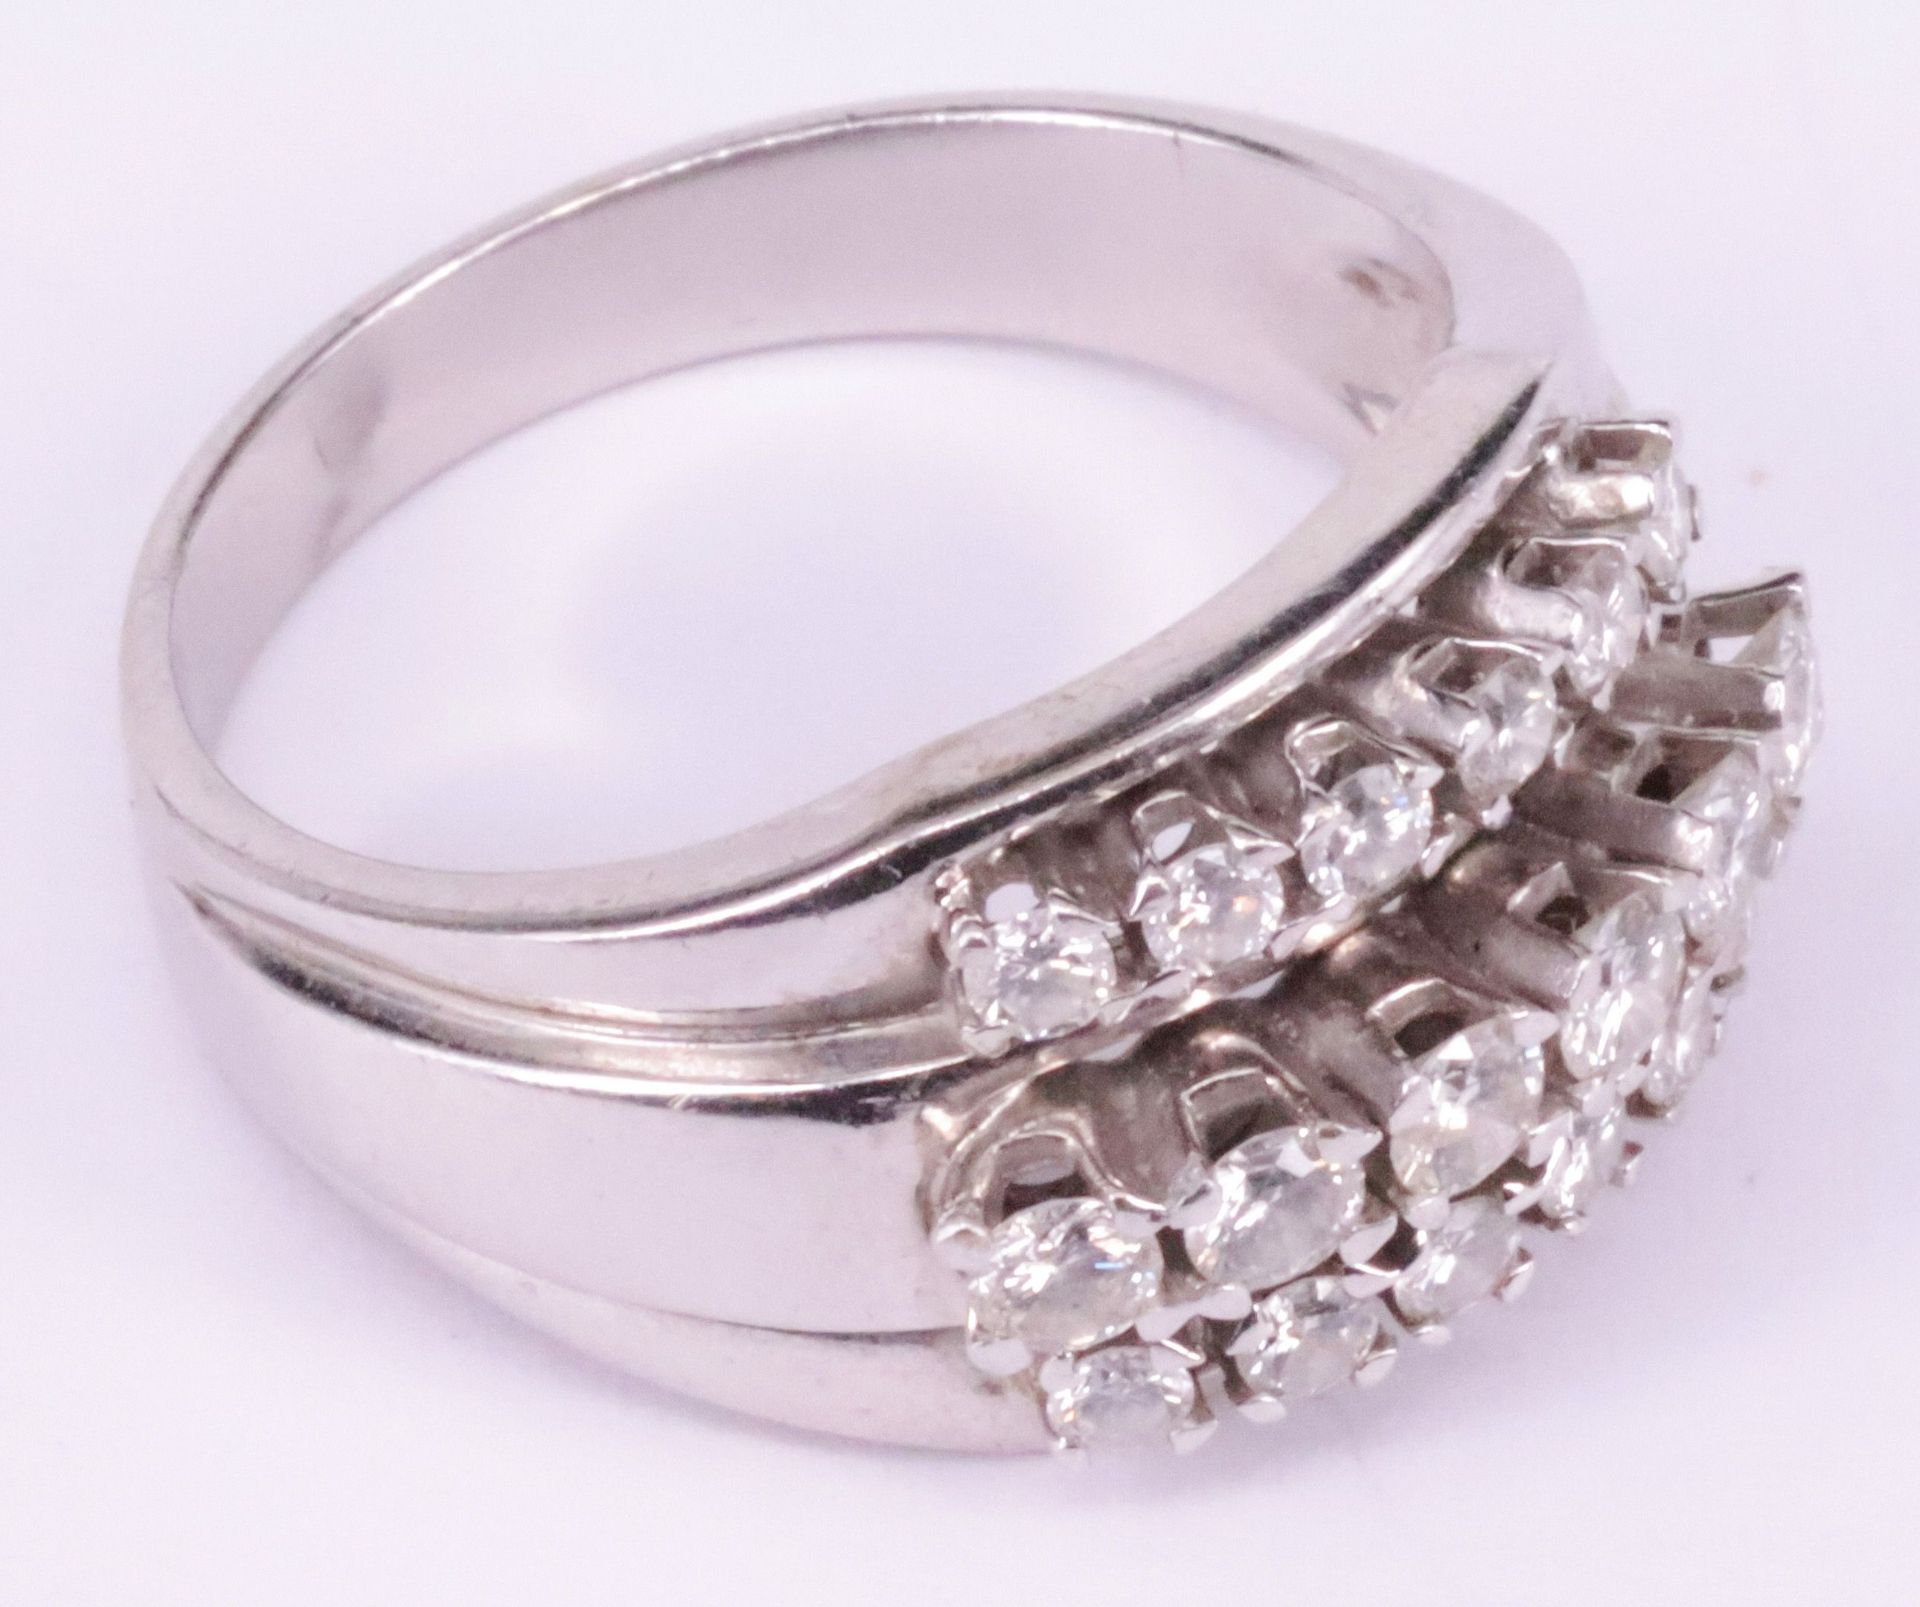 Schmuckset mit Rubinen und Diamanten: Armband, Anhänger und Ring mit Elementen in Blütenform, - Image 5 of 8